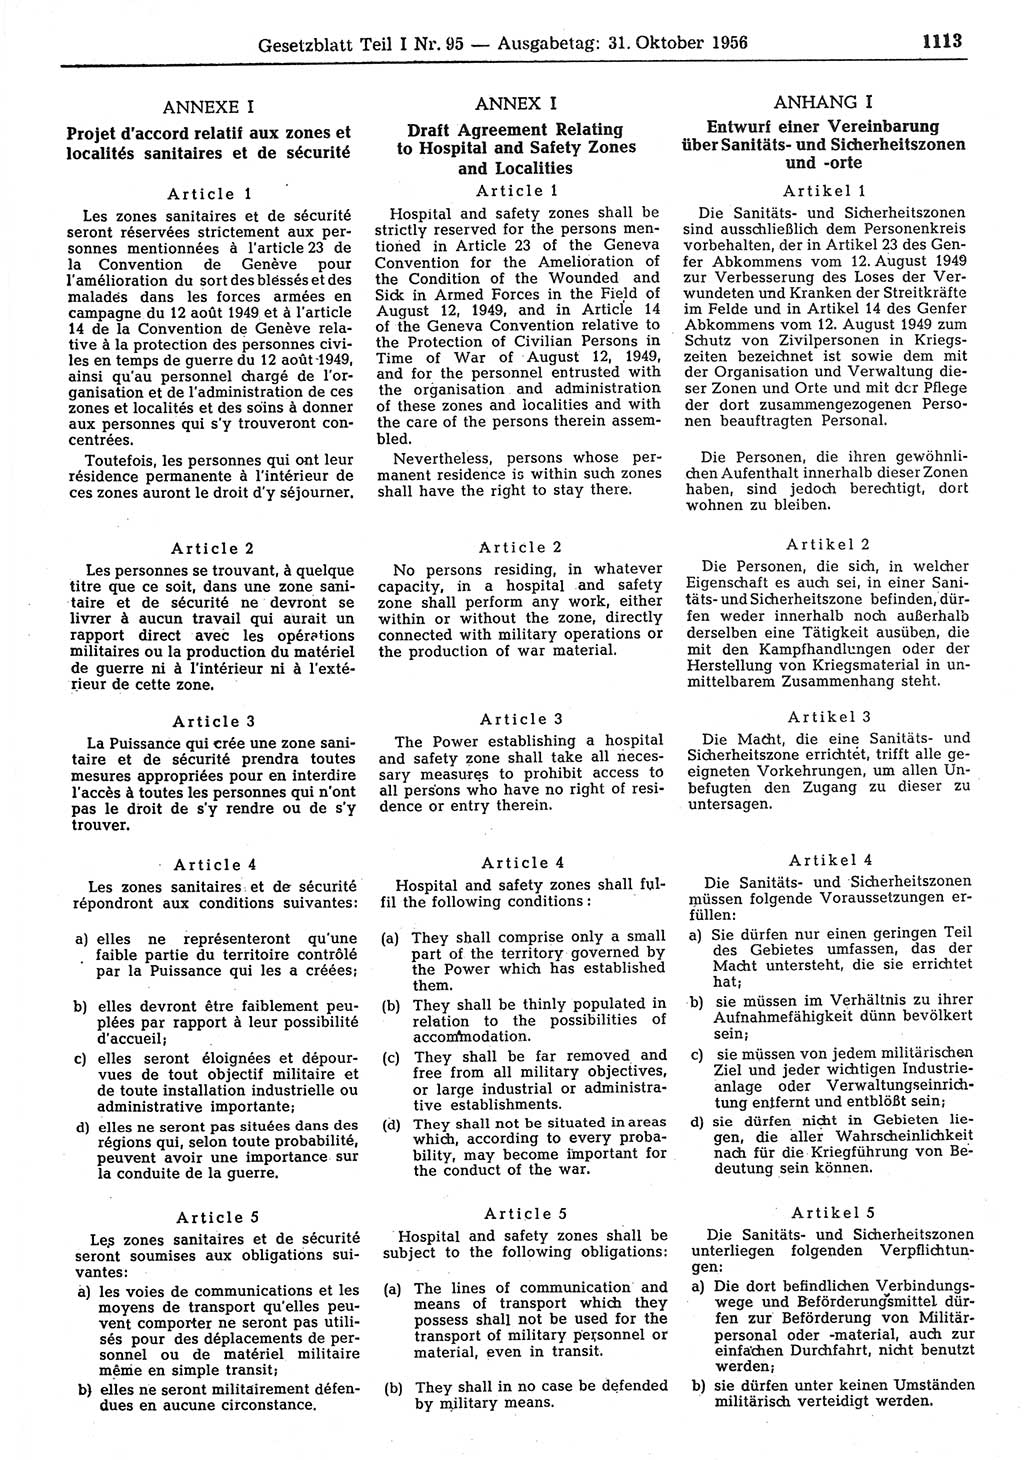 Gesetzblatt (GBl.) der Deutschen Demokratischen Republik (DDR) Teil Ⅰ 1956, Seite 1113 (GBl. DDR Ⅰ 1956, S. 1113)